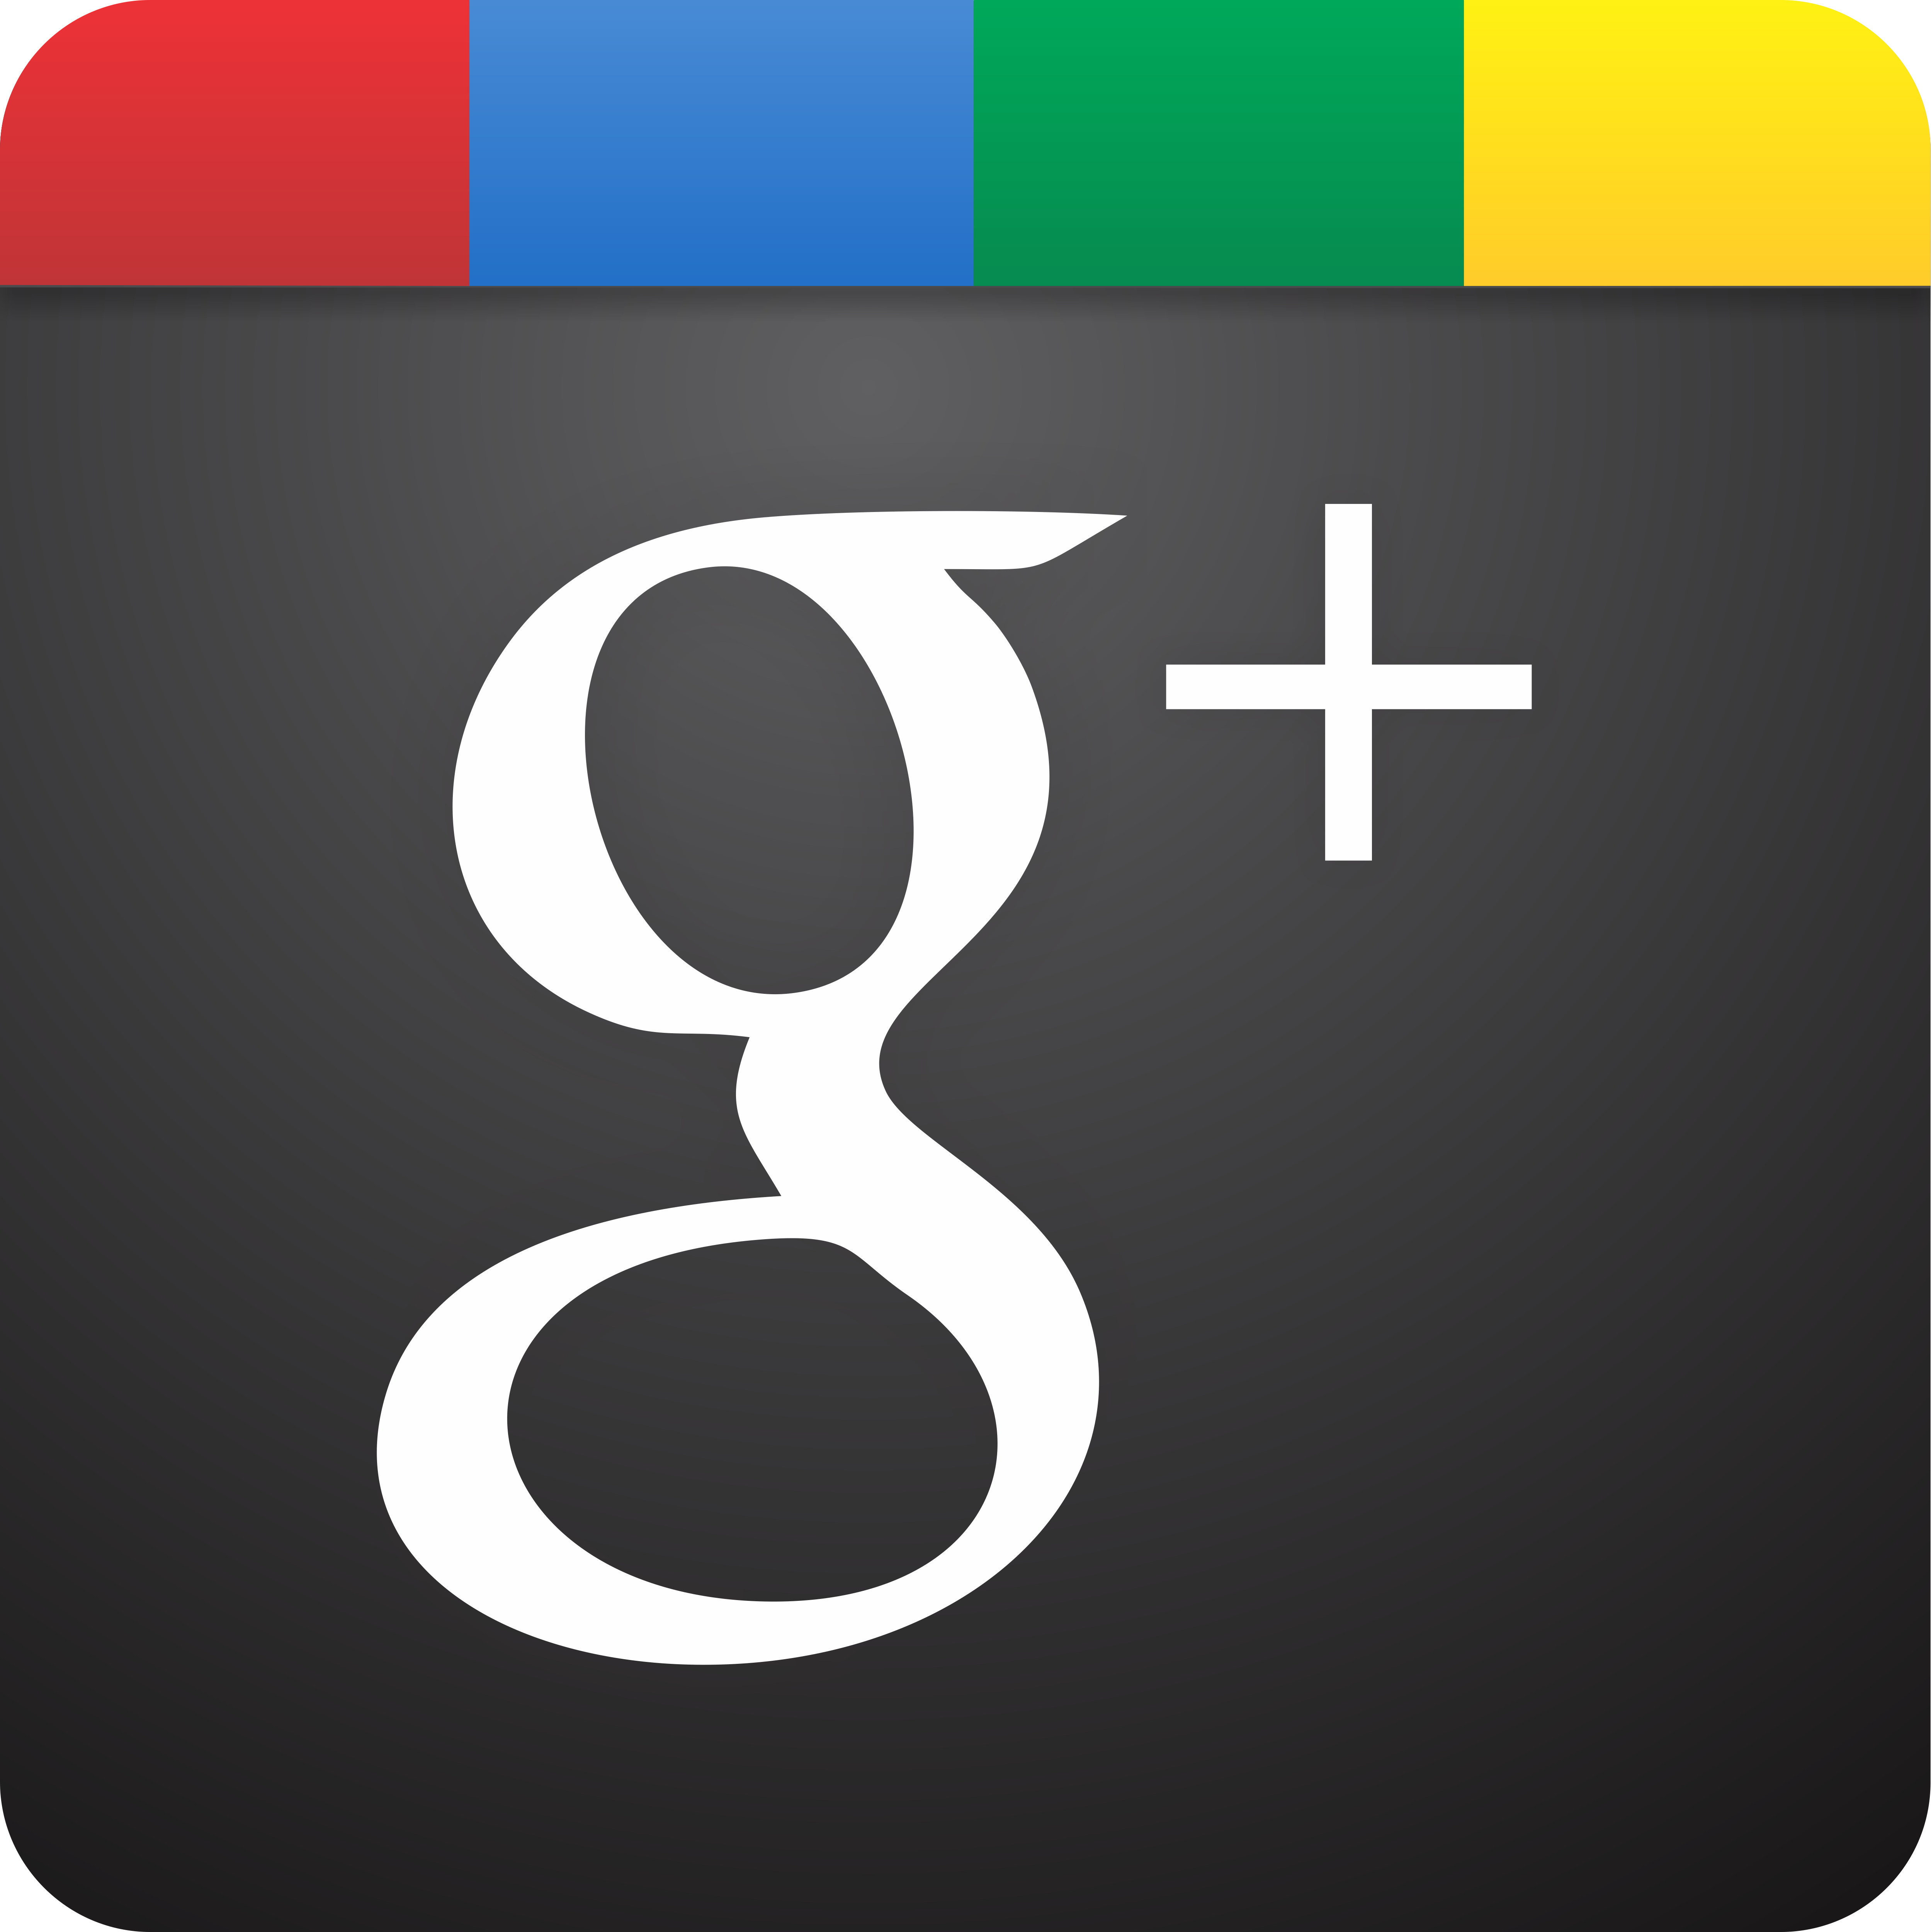 Google Logo HD by gomedun Goo